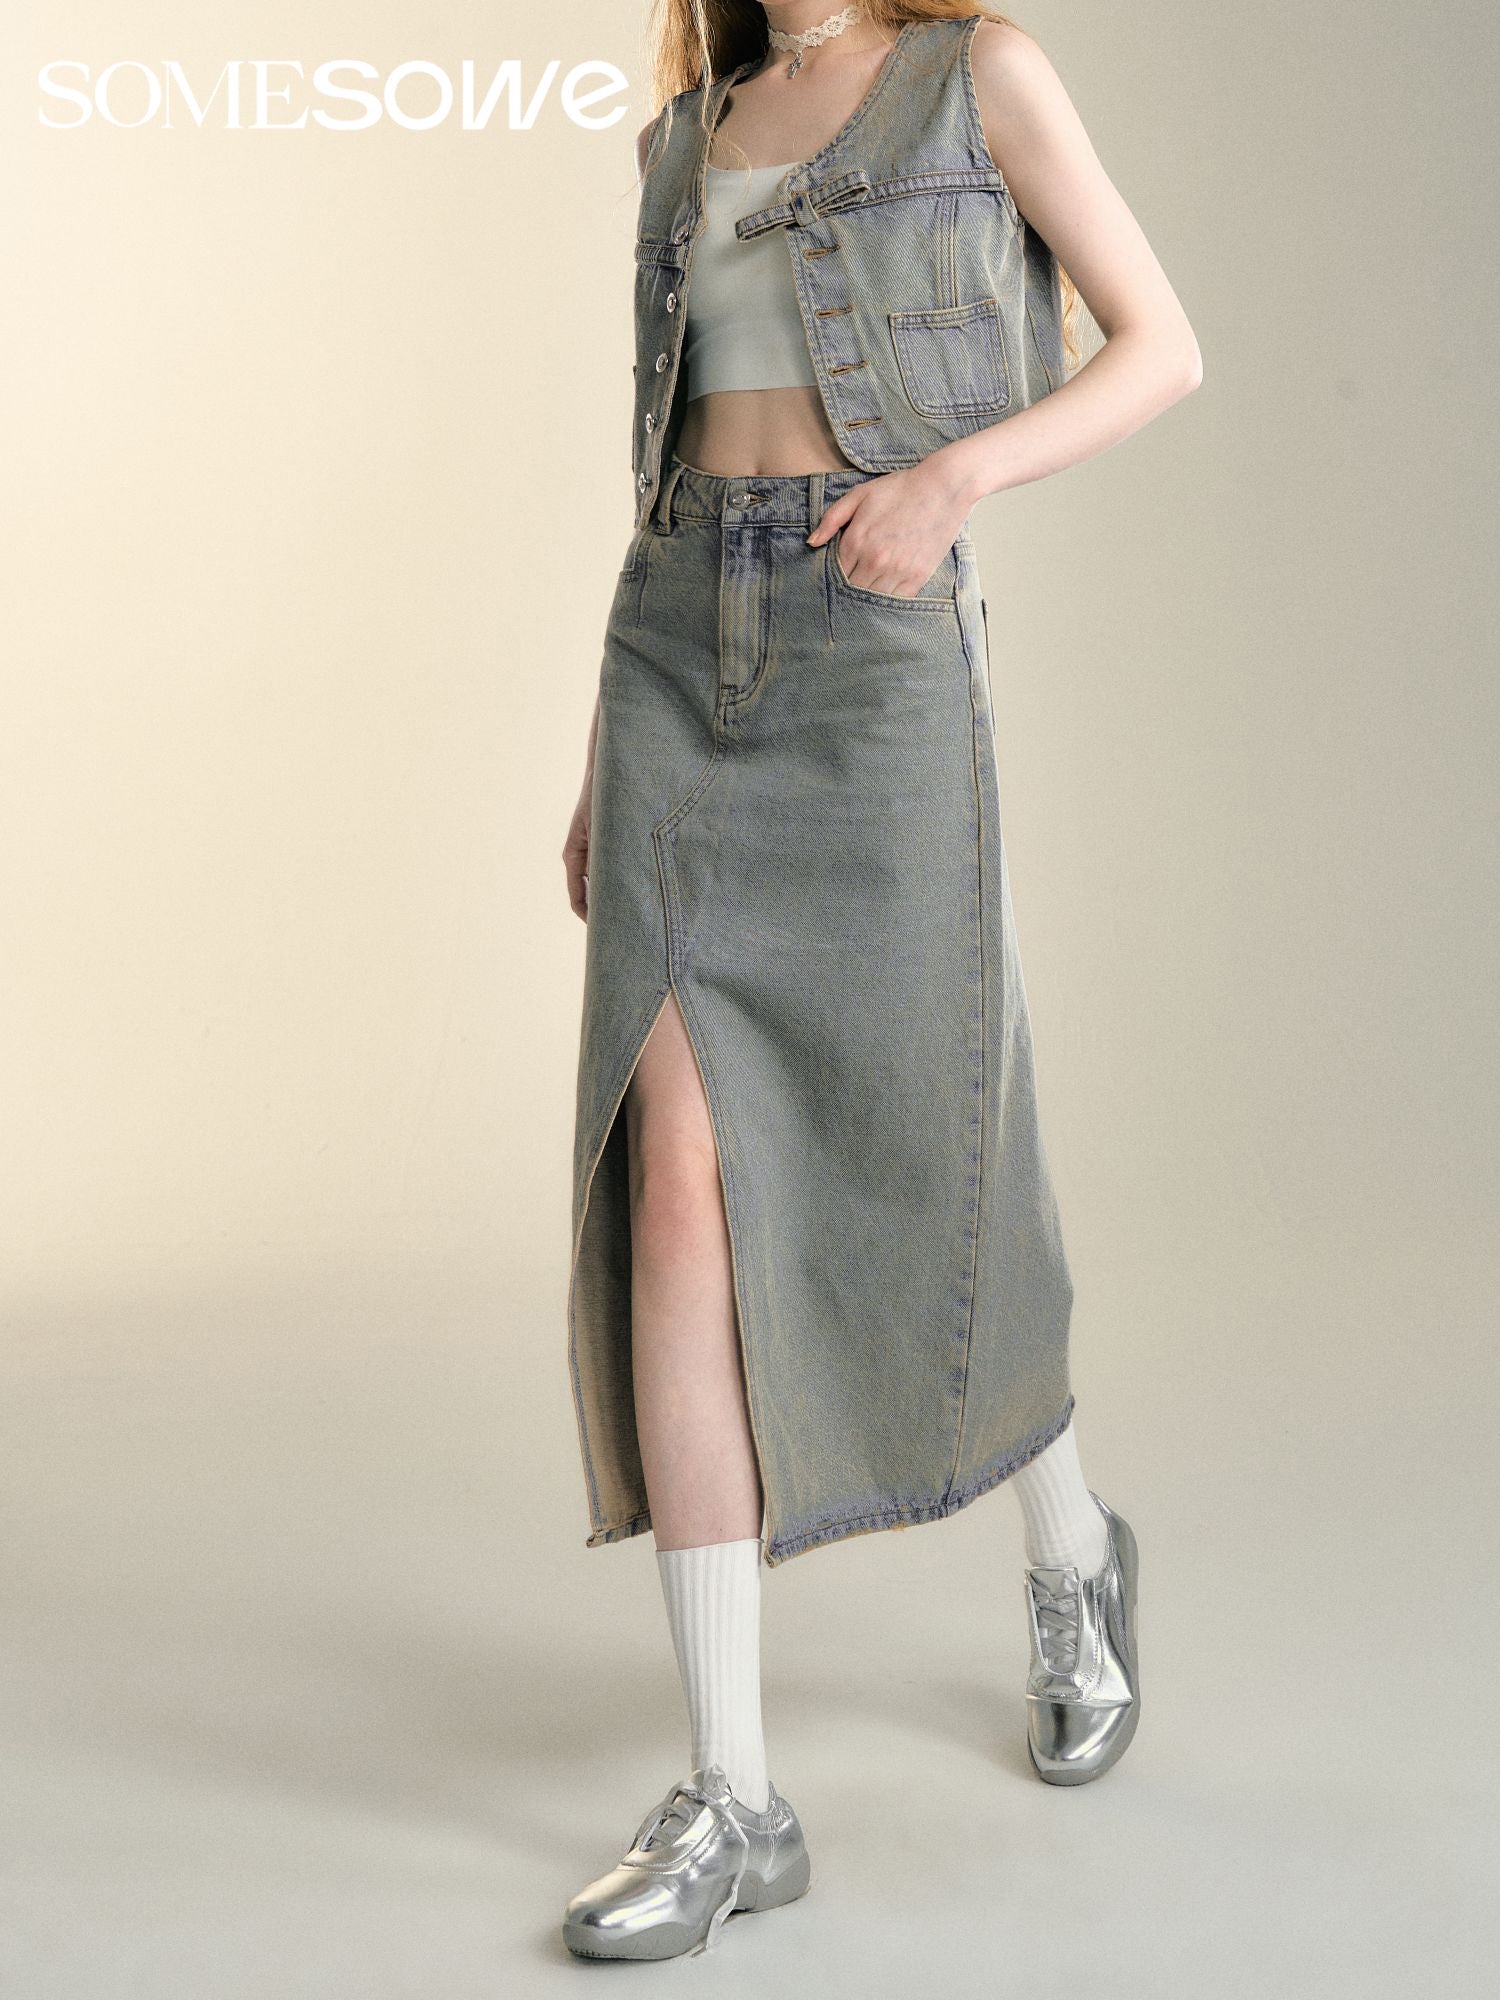 SOMESOWE Retro Washed Denim Skirt | MADA IN CHINA